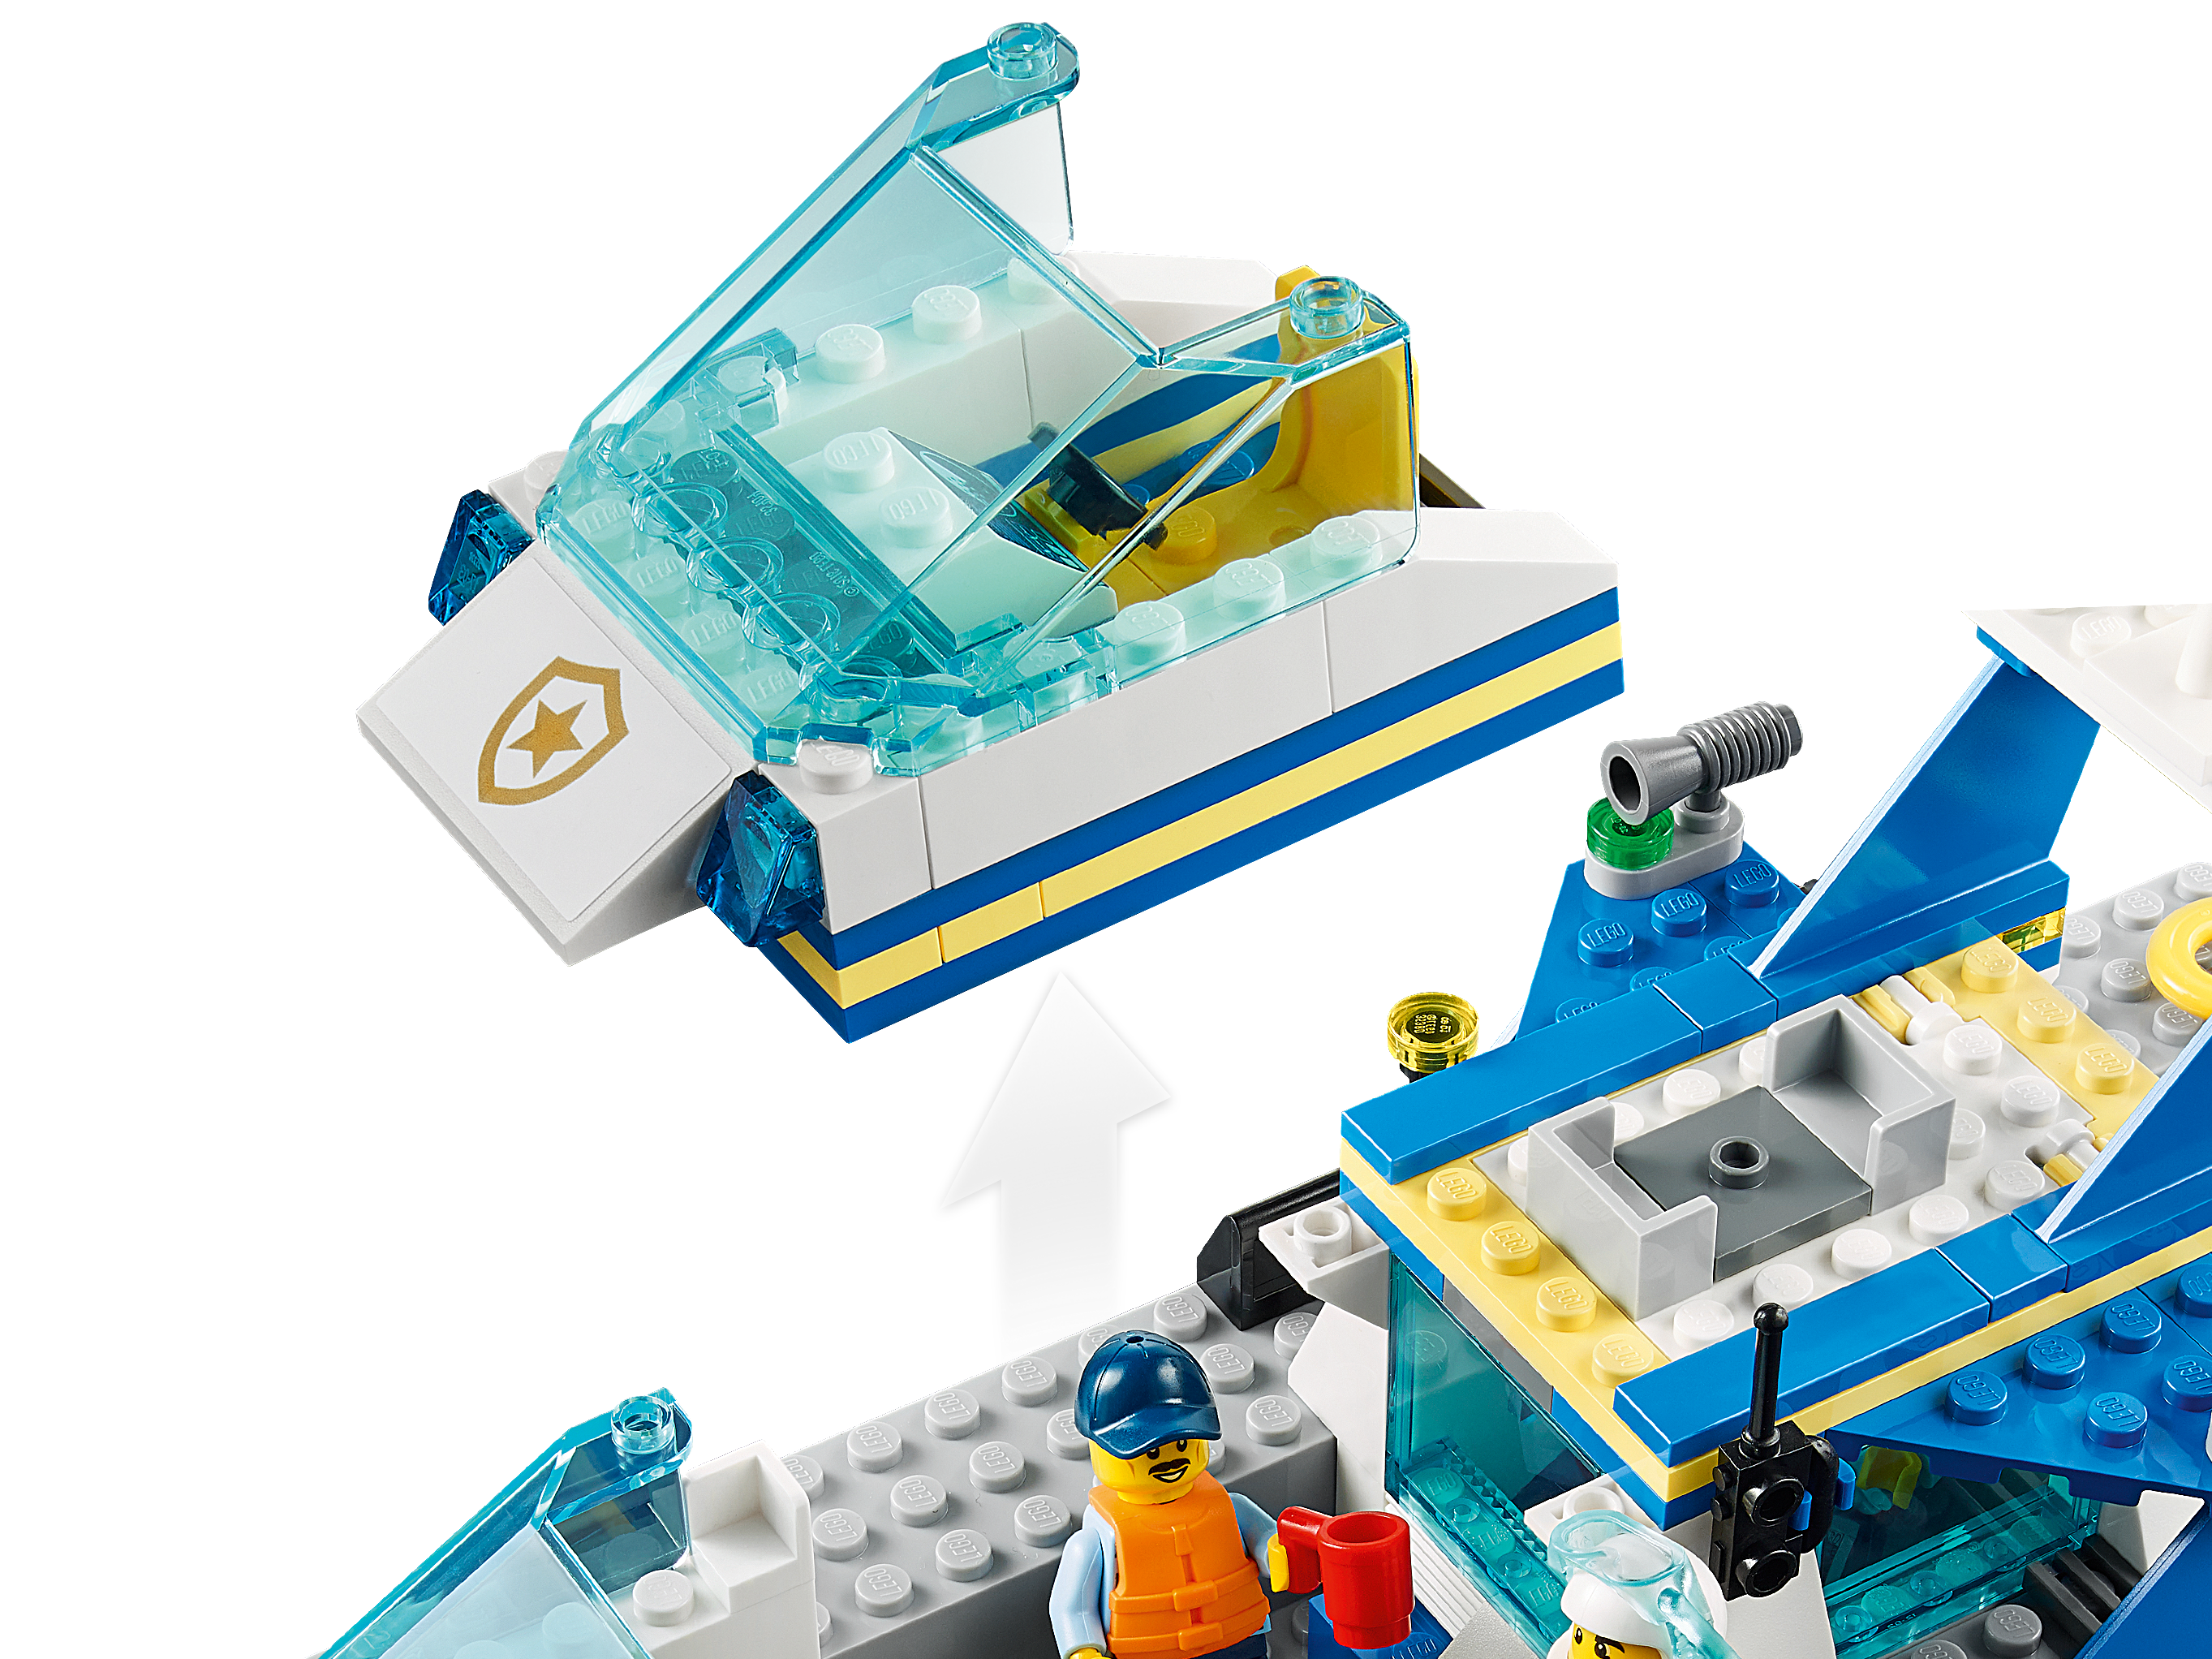 LEGO® City - Le bateau de patrouille de la police - Brault